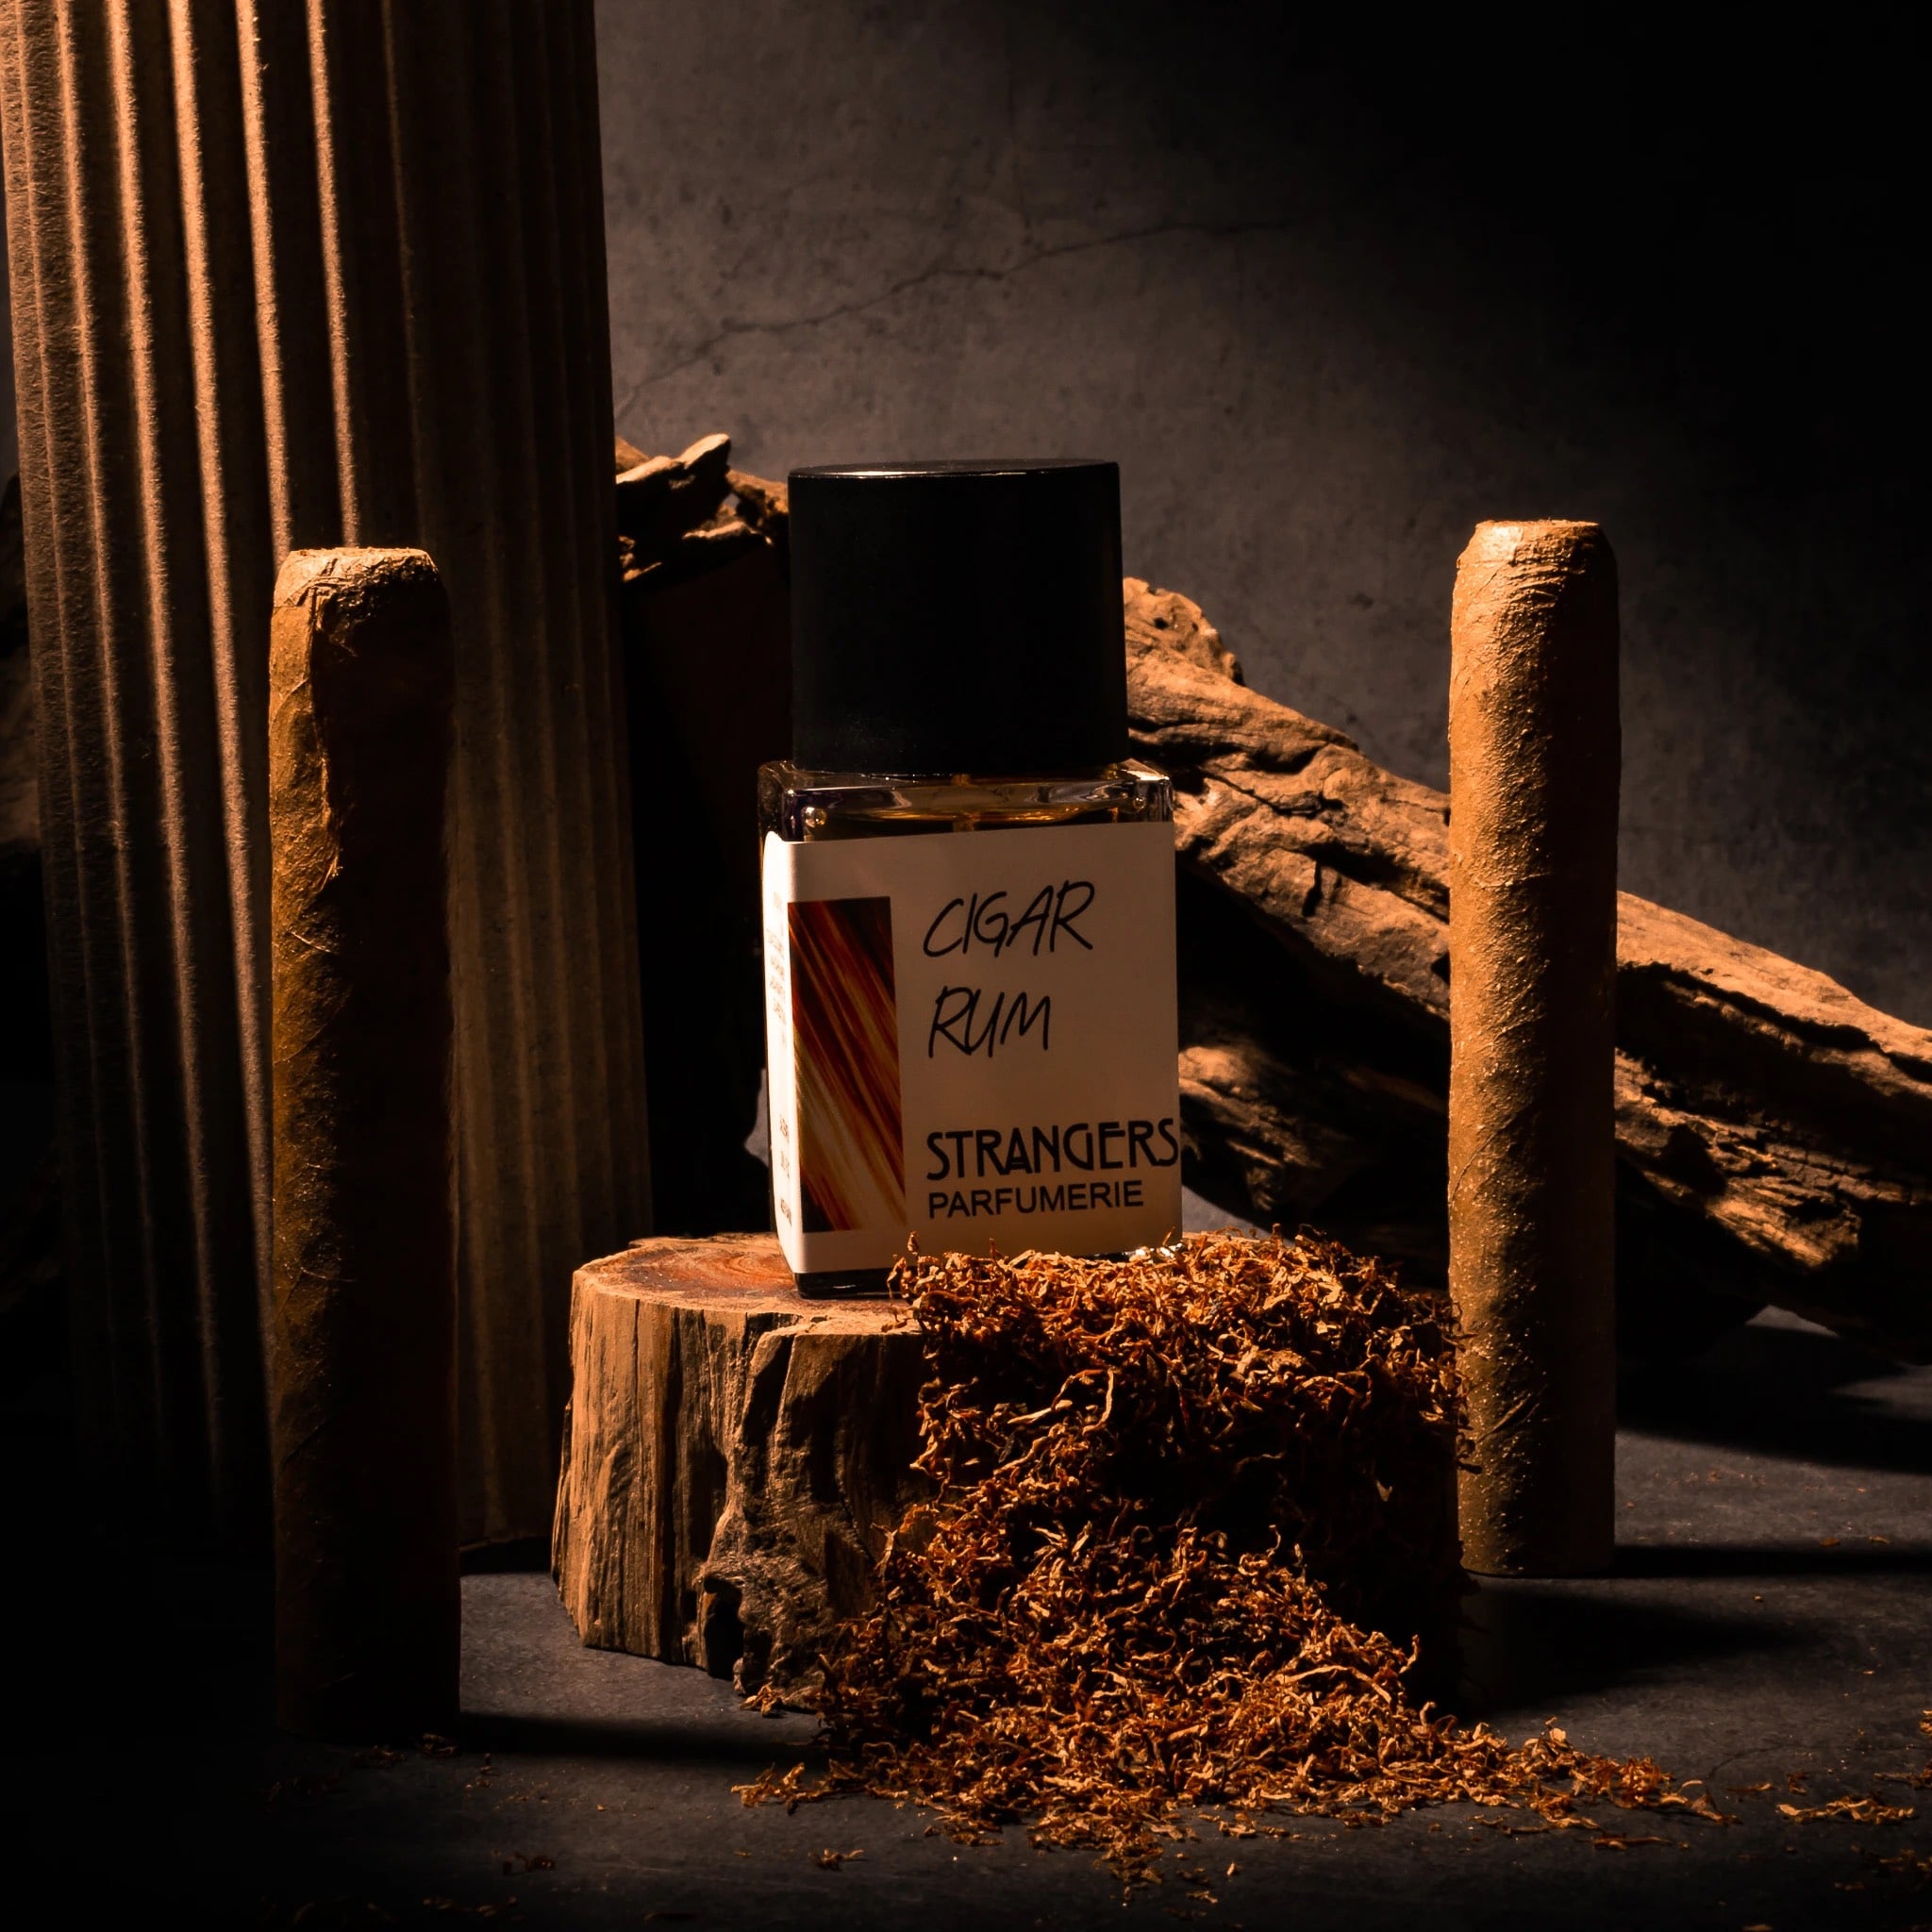 Strangers Parfumerie Cigar Rum 1 - Nuochoarosa.com - Nước hoa cao cấp, chính hãng giá tốt, mẫu mới